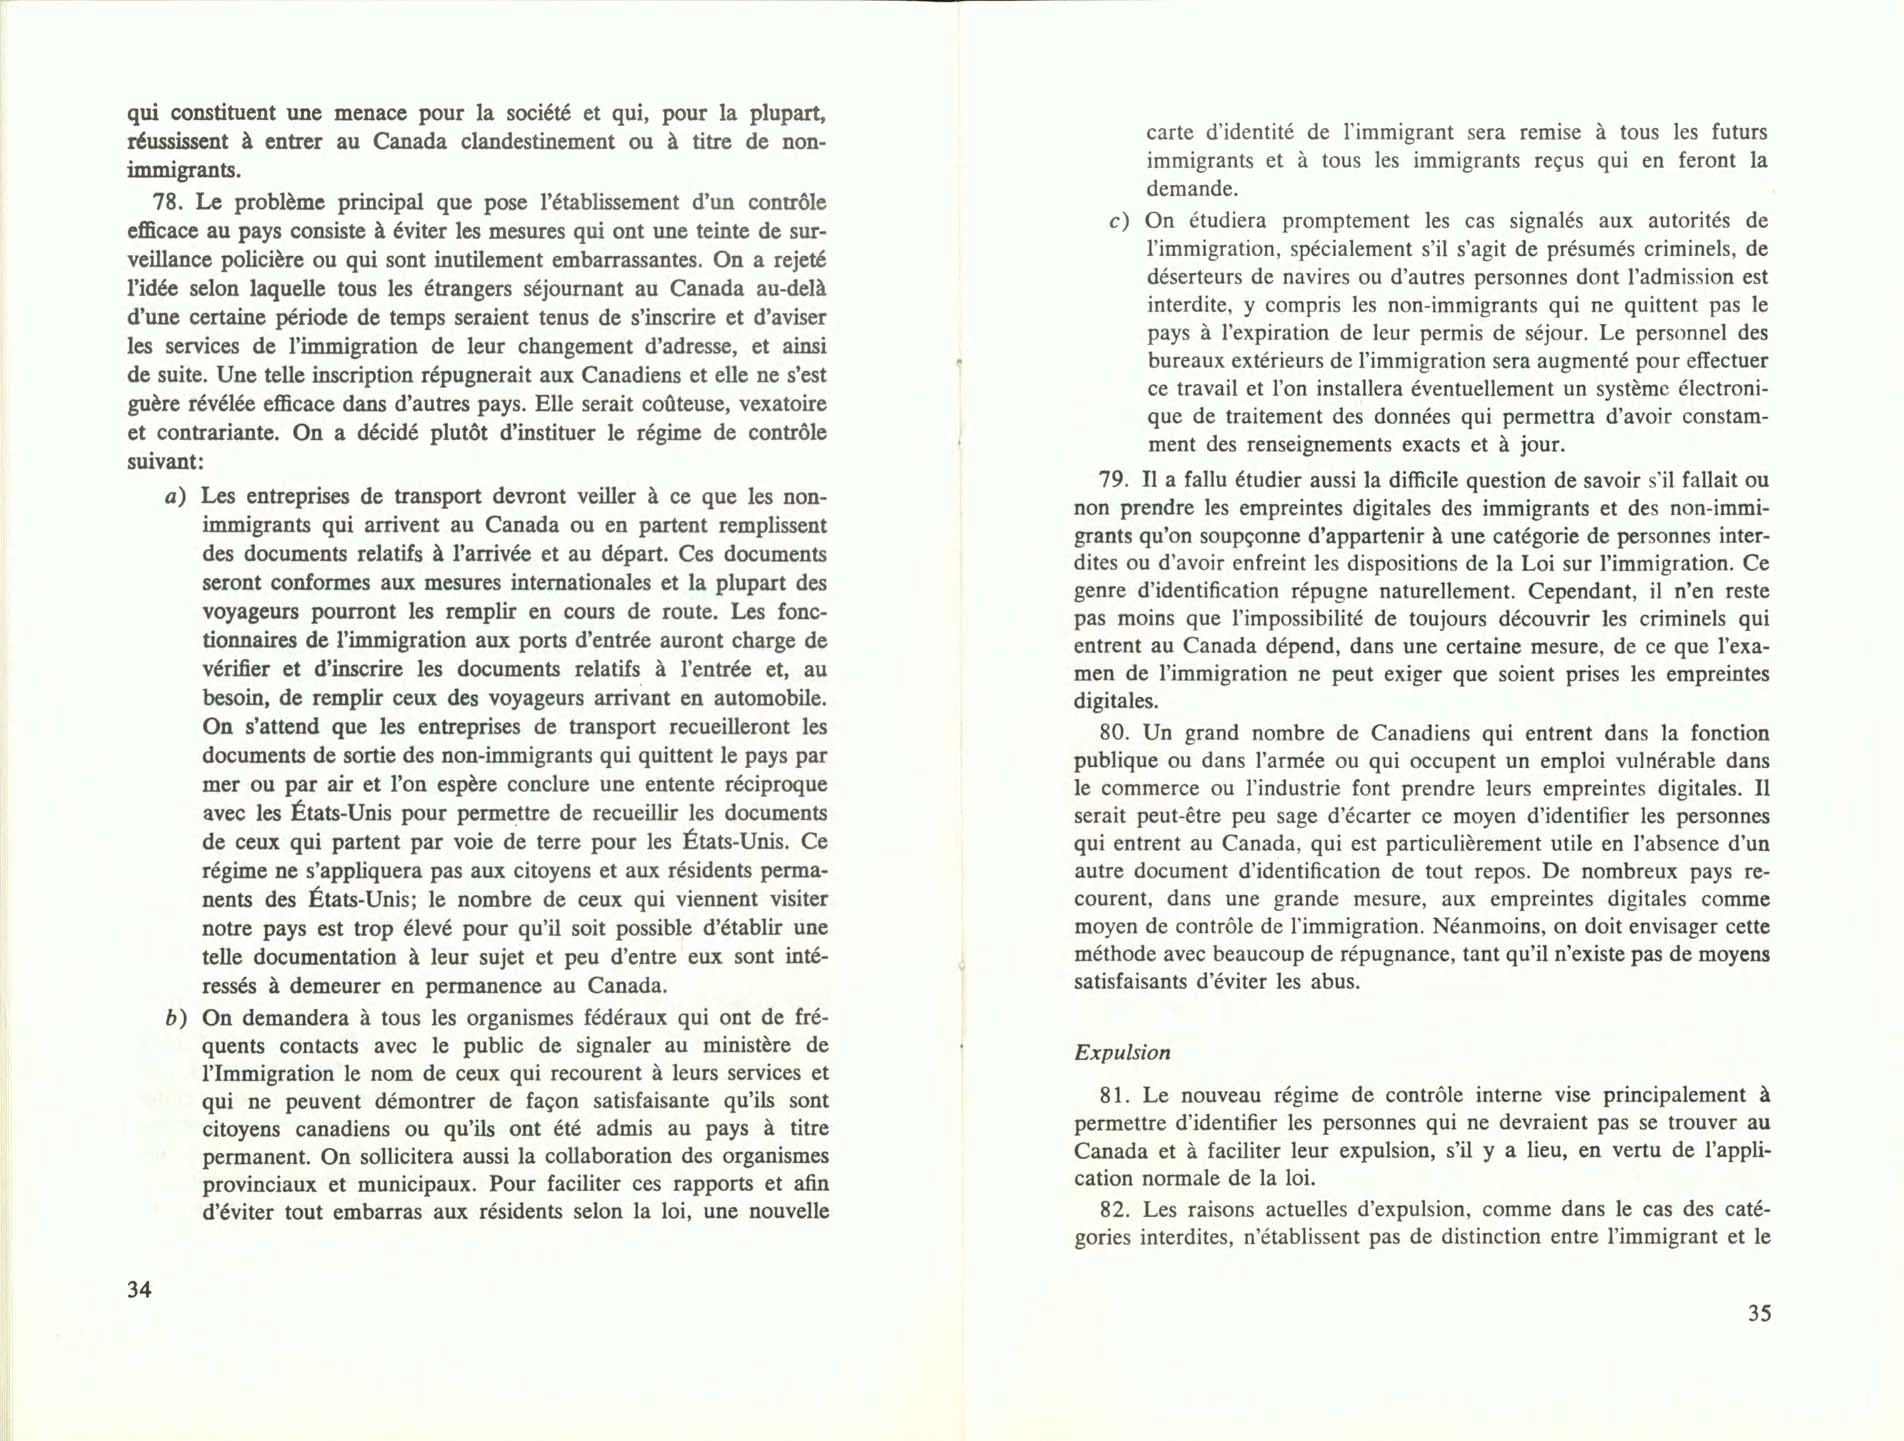 Page 34, 35 Livre Blanc sur l’immigration, 1966